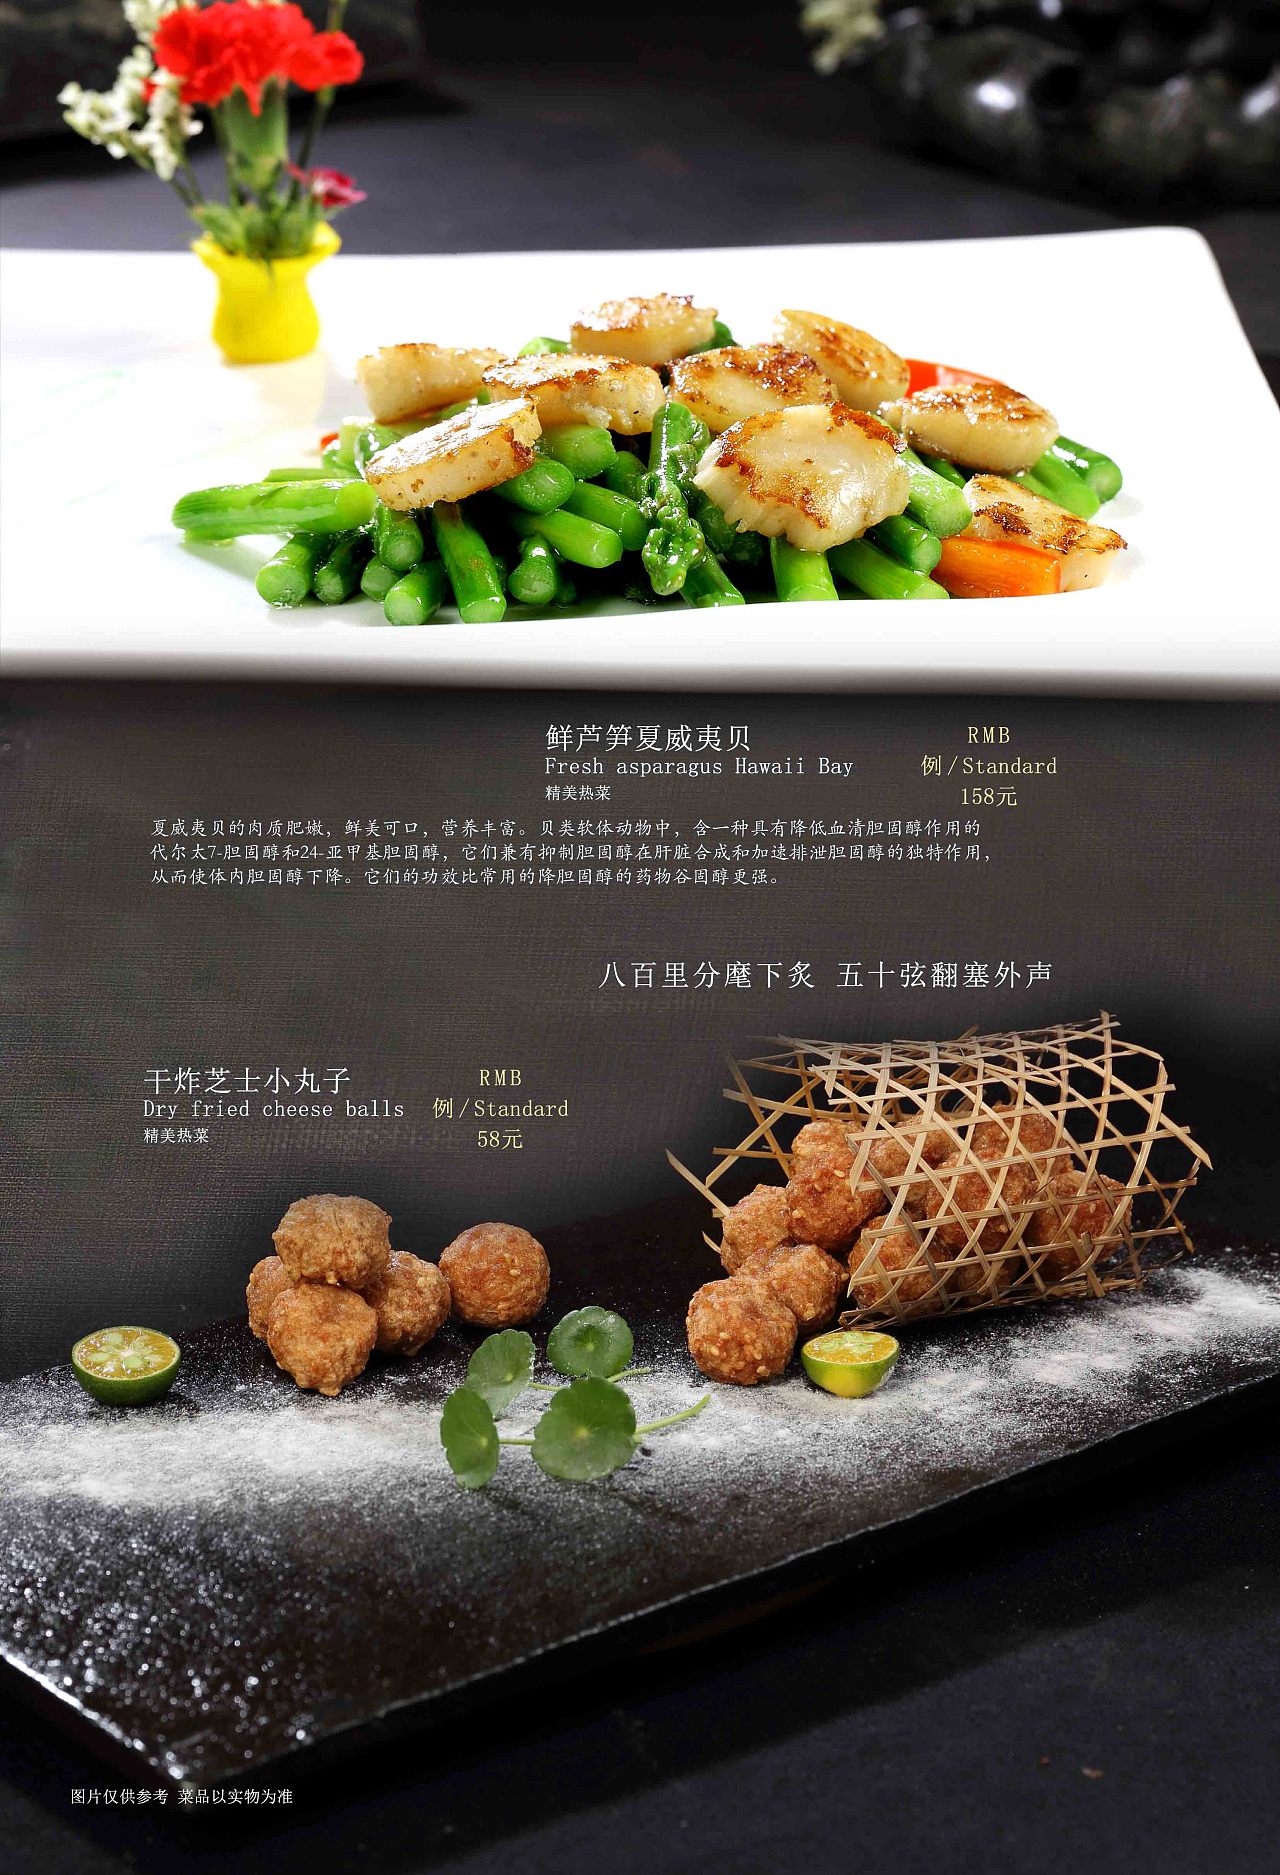 中餐菜谱设计窍门：掌握不一样的窍门设计制作想法-捷达菜谱设计制作公司